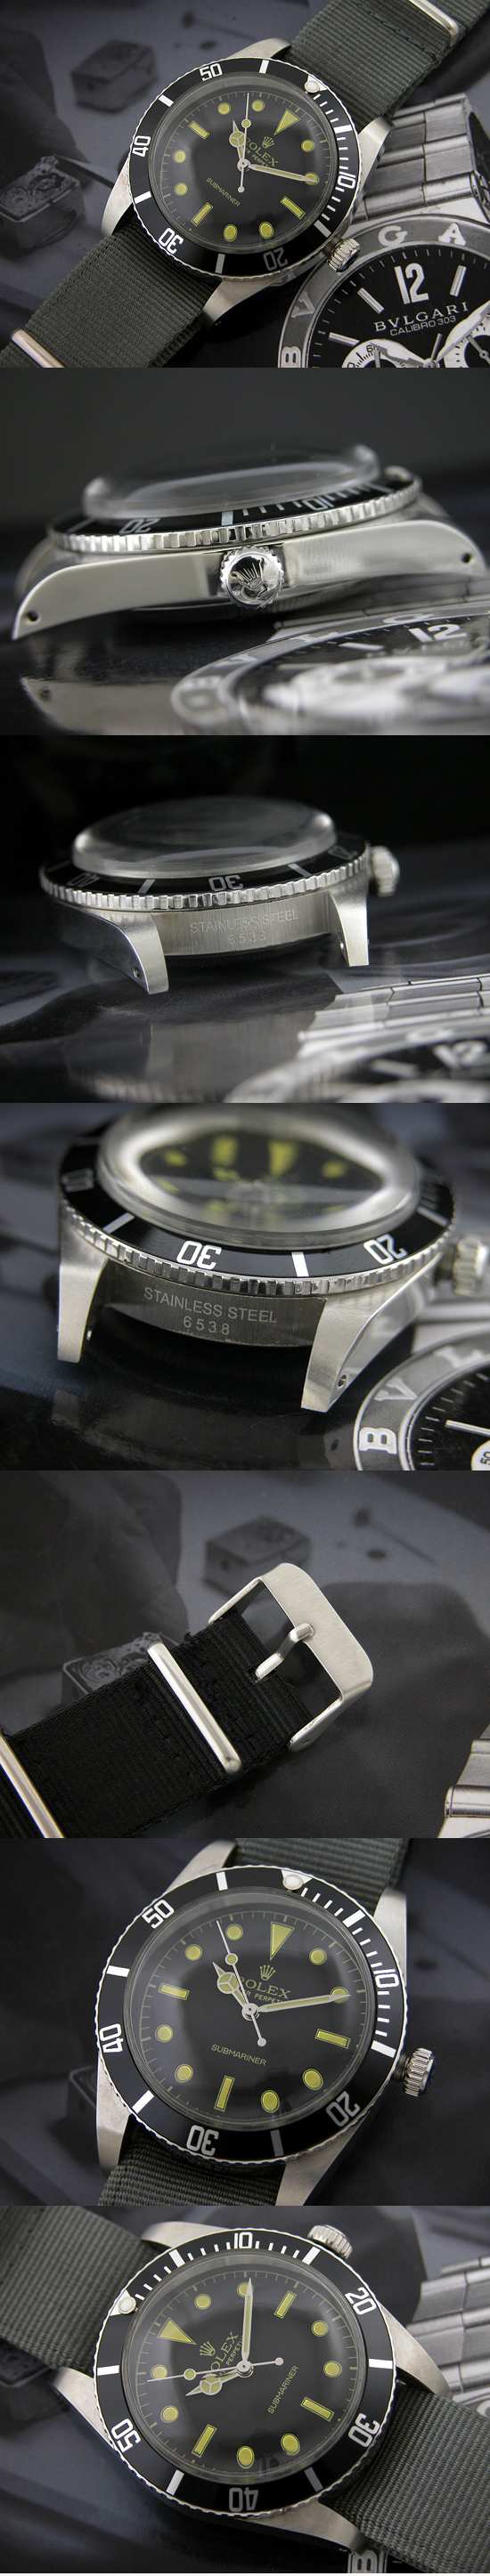 おしゃれなブランド時計がロレックス-サブマリーナ-ROLEX-16610-32-男性用を提供します.